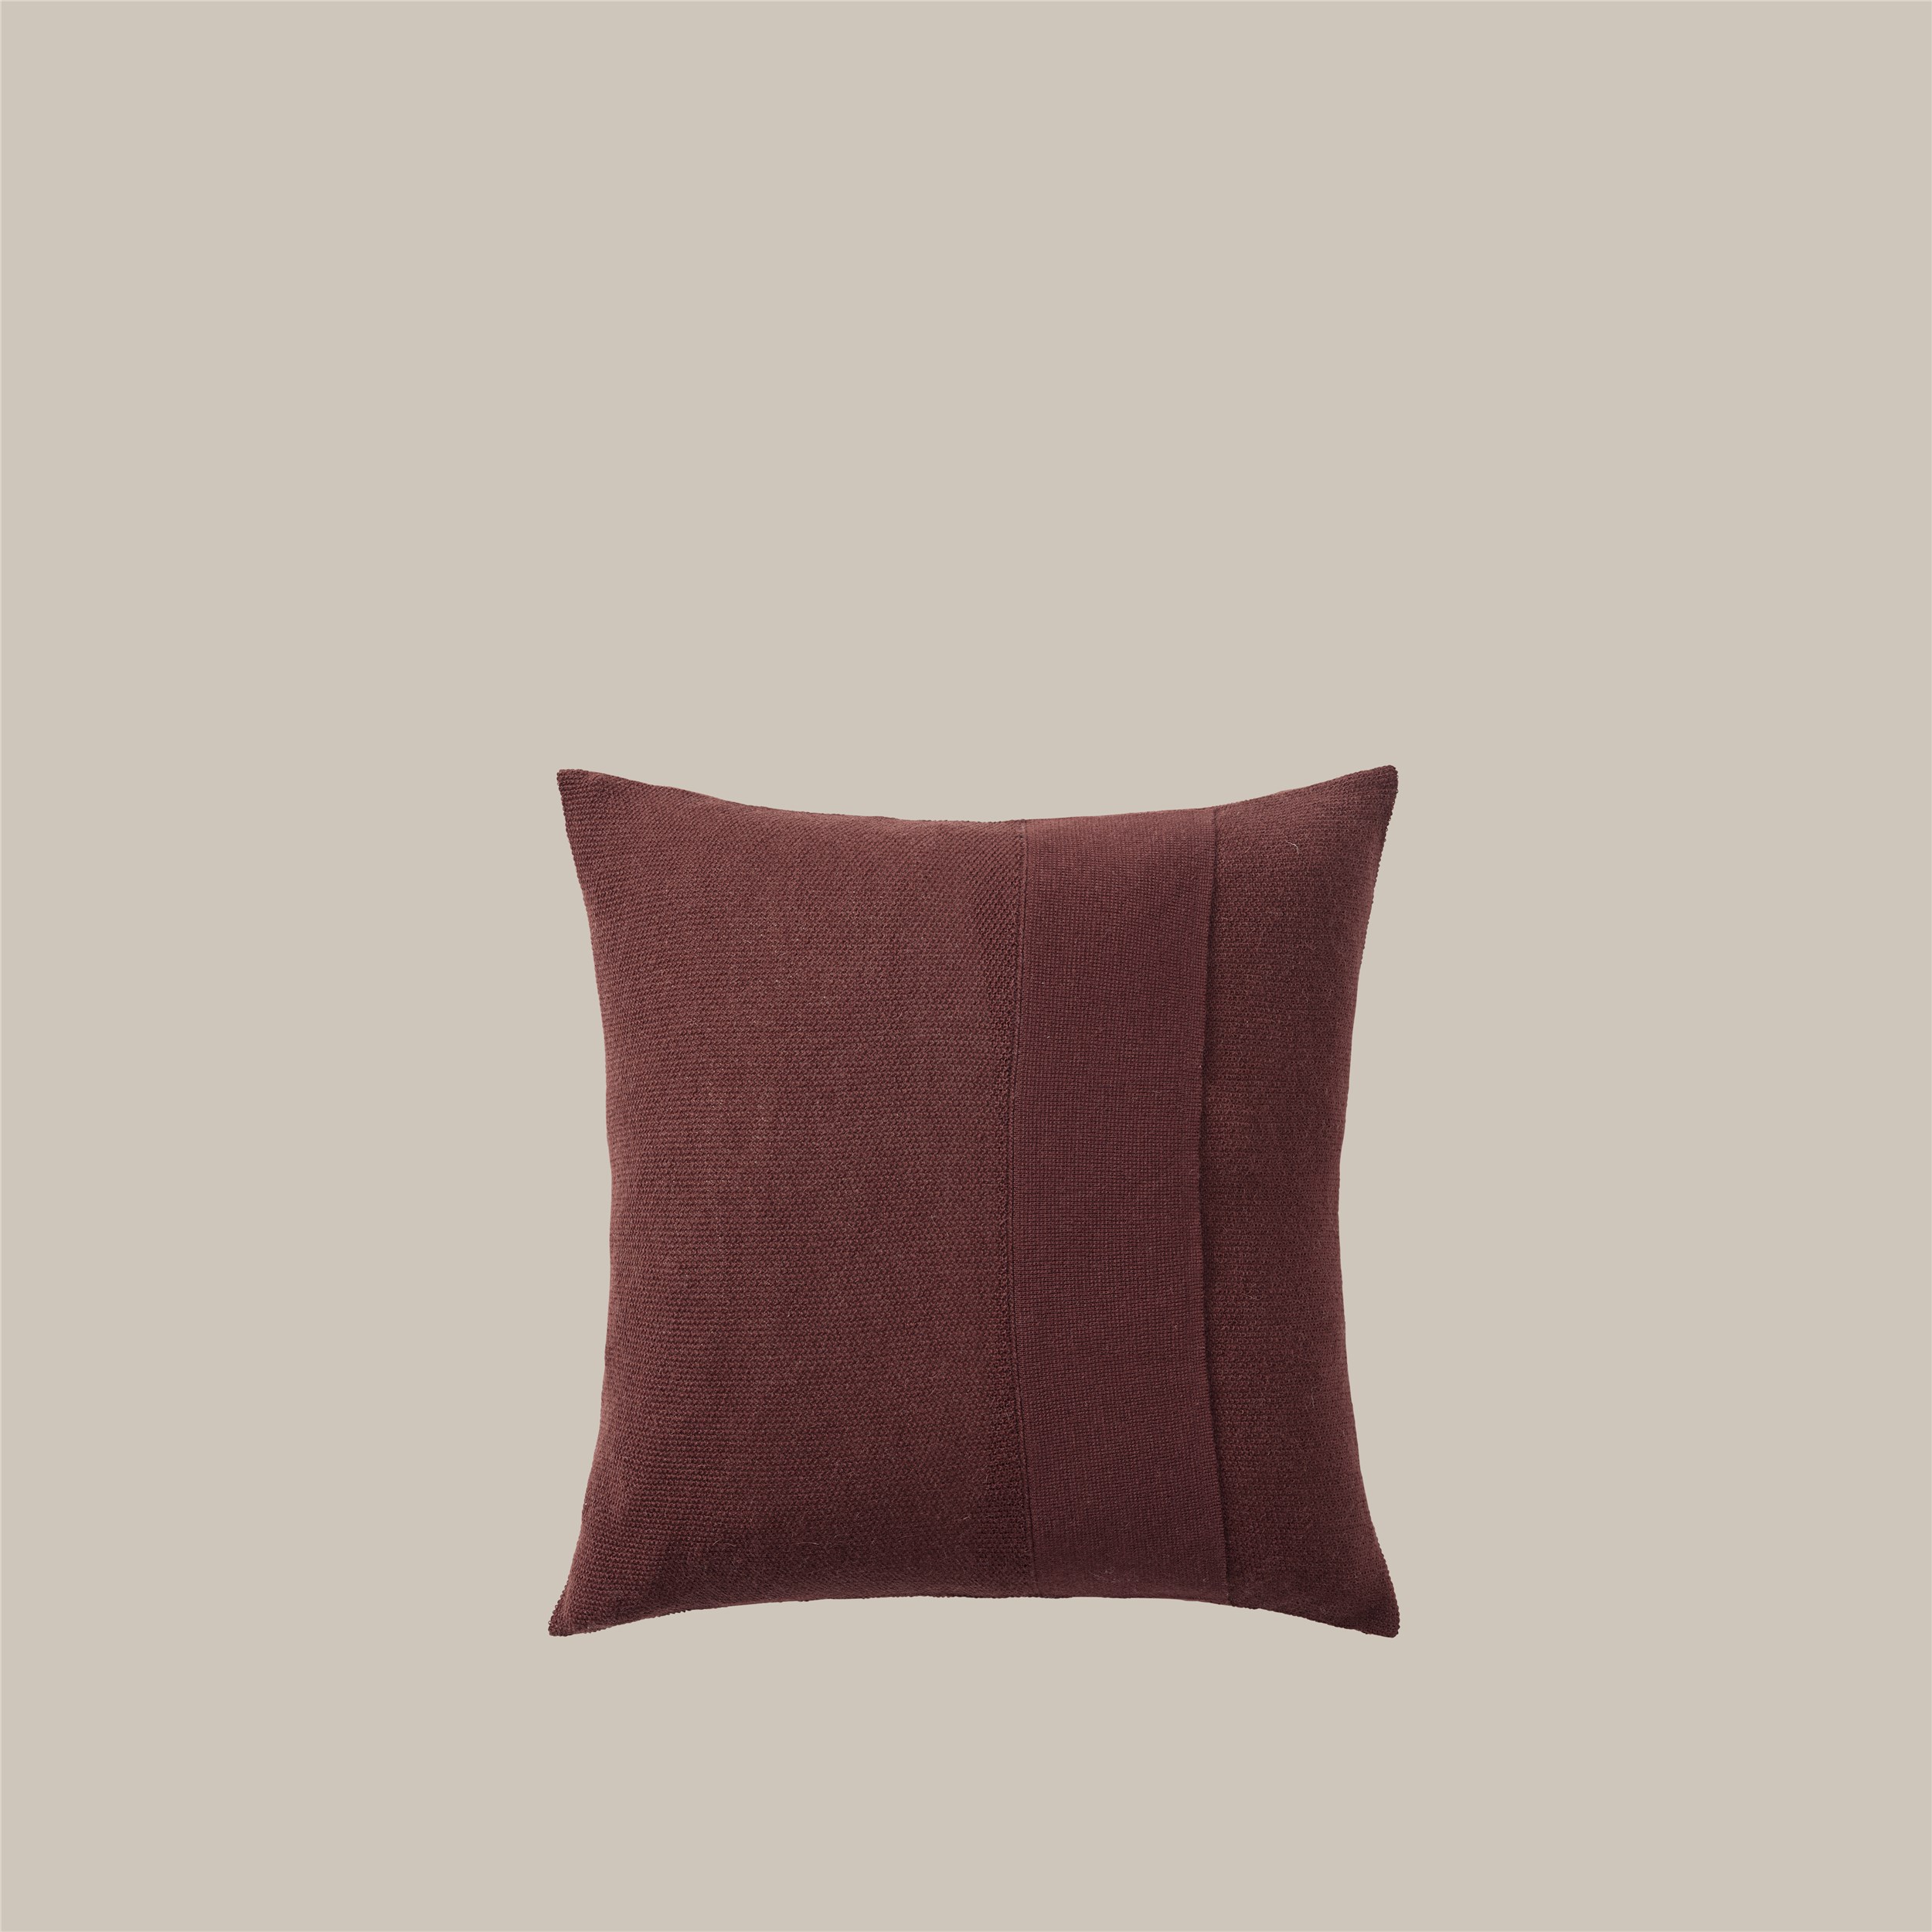 Layer Cushion 50x50 burgundy